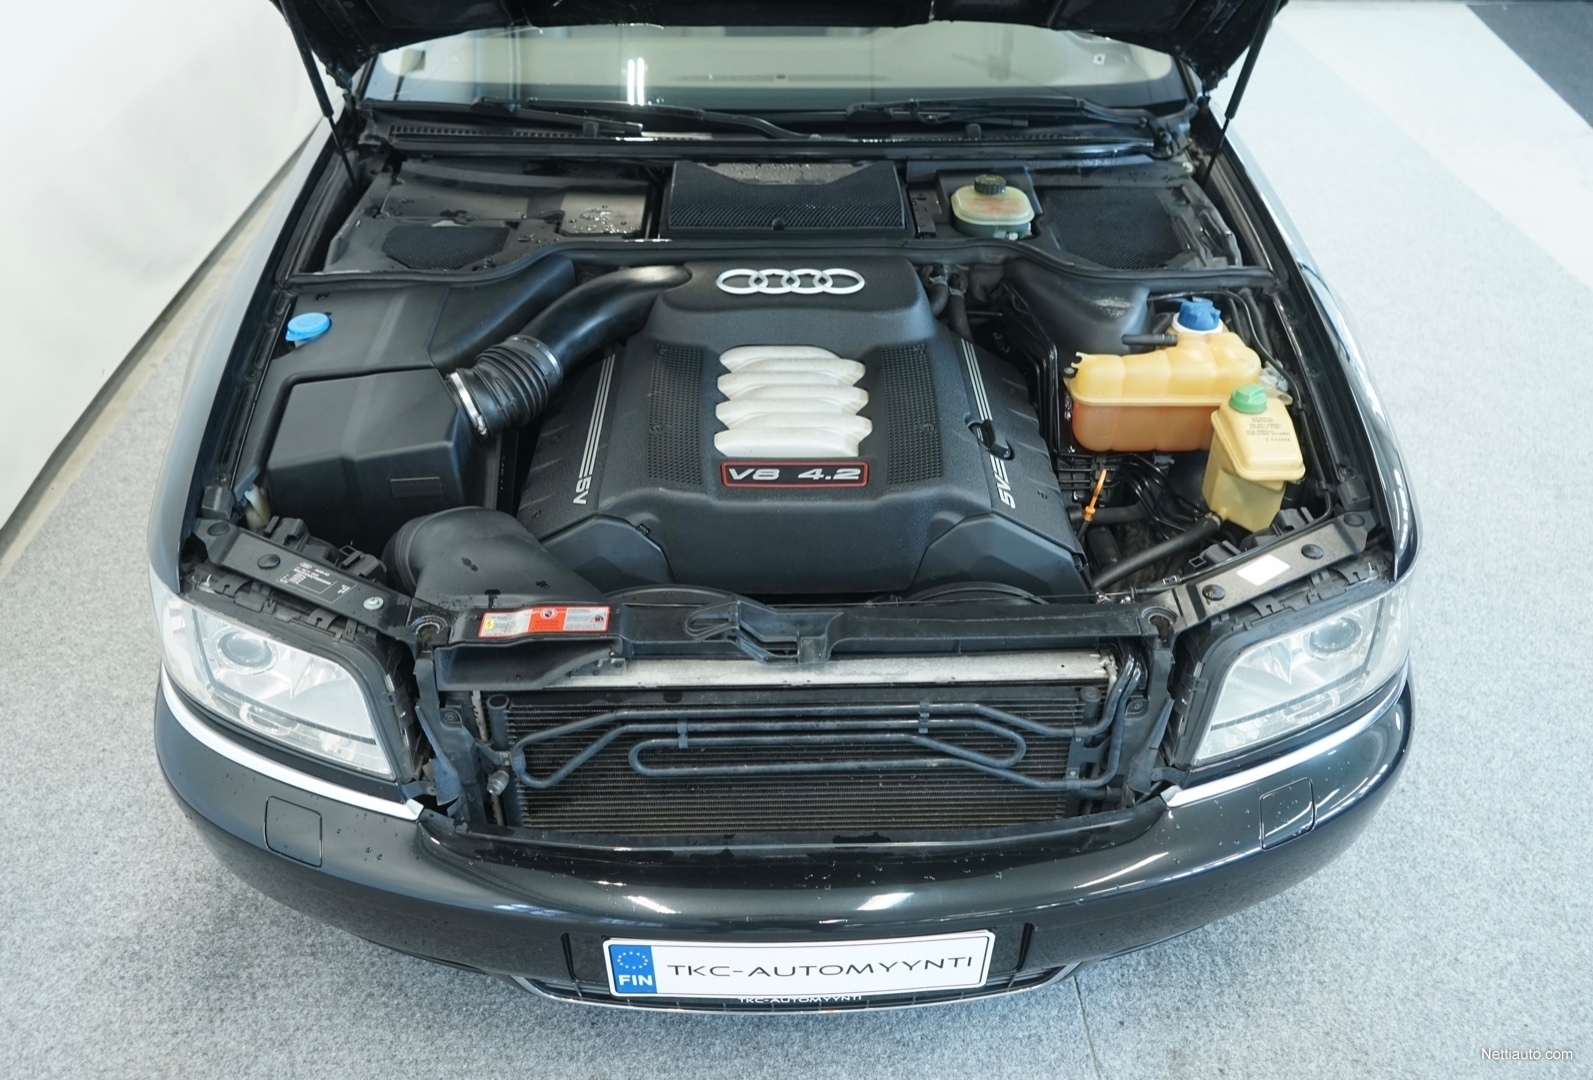 2X D1S XENON burner red 6000k for Audi A8 D2 4D D3 4E D4 4H Q3 Q5 8R Q7 4L  TT £26.03 - PicClick UK